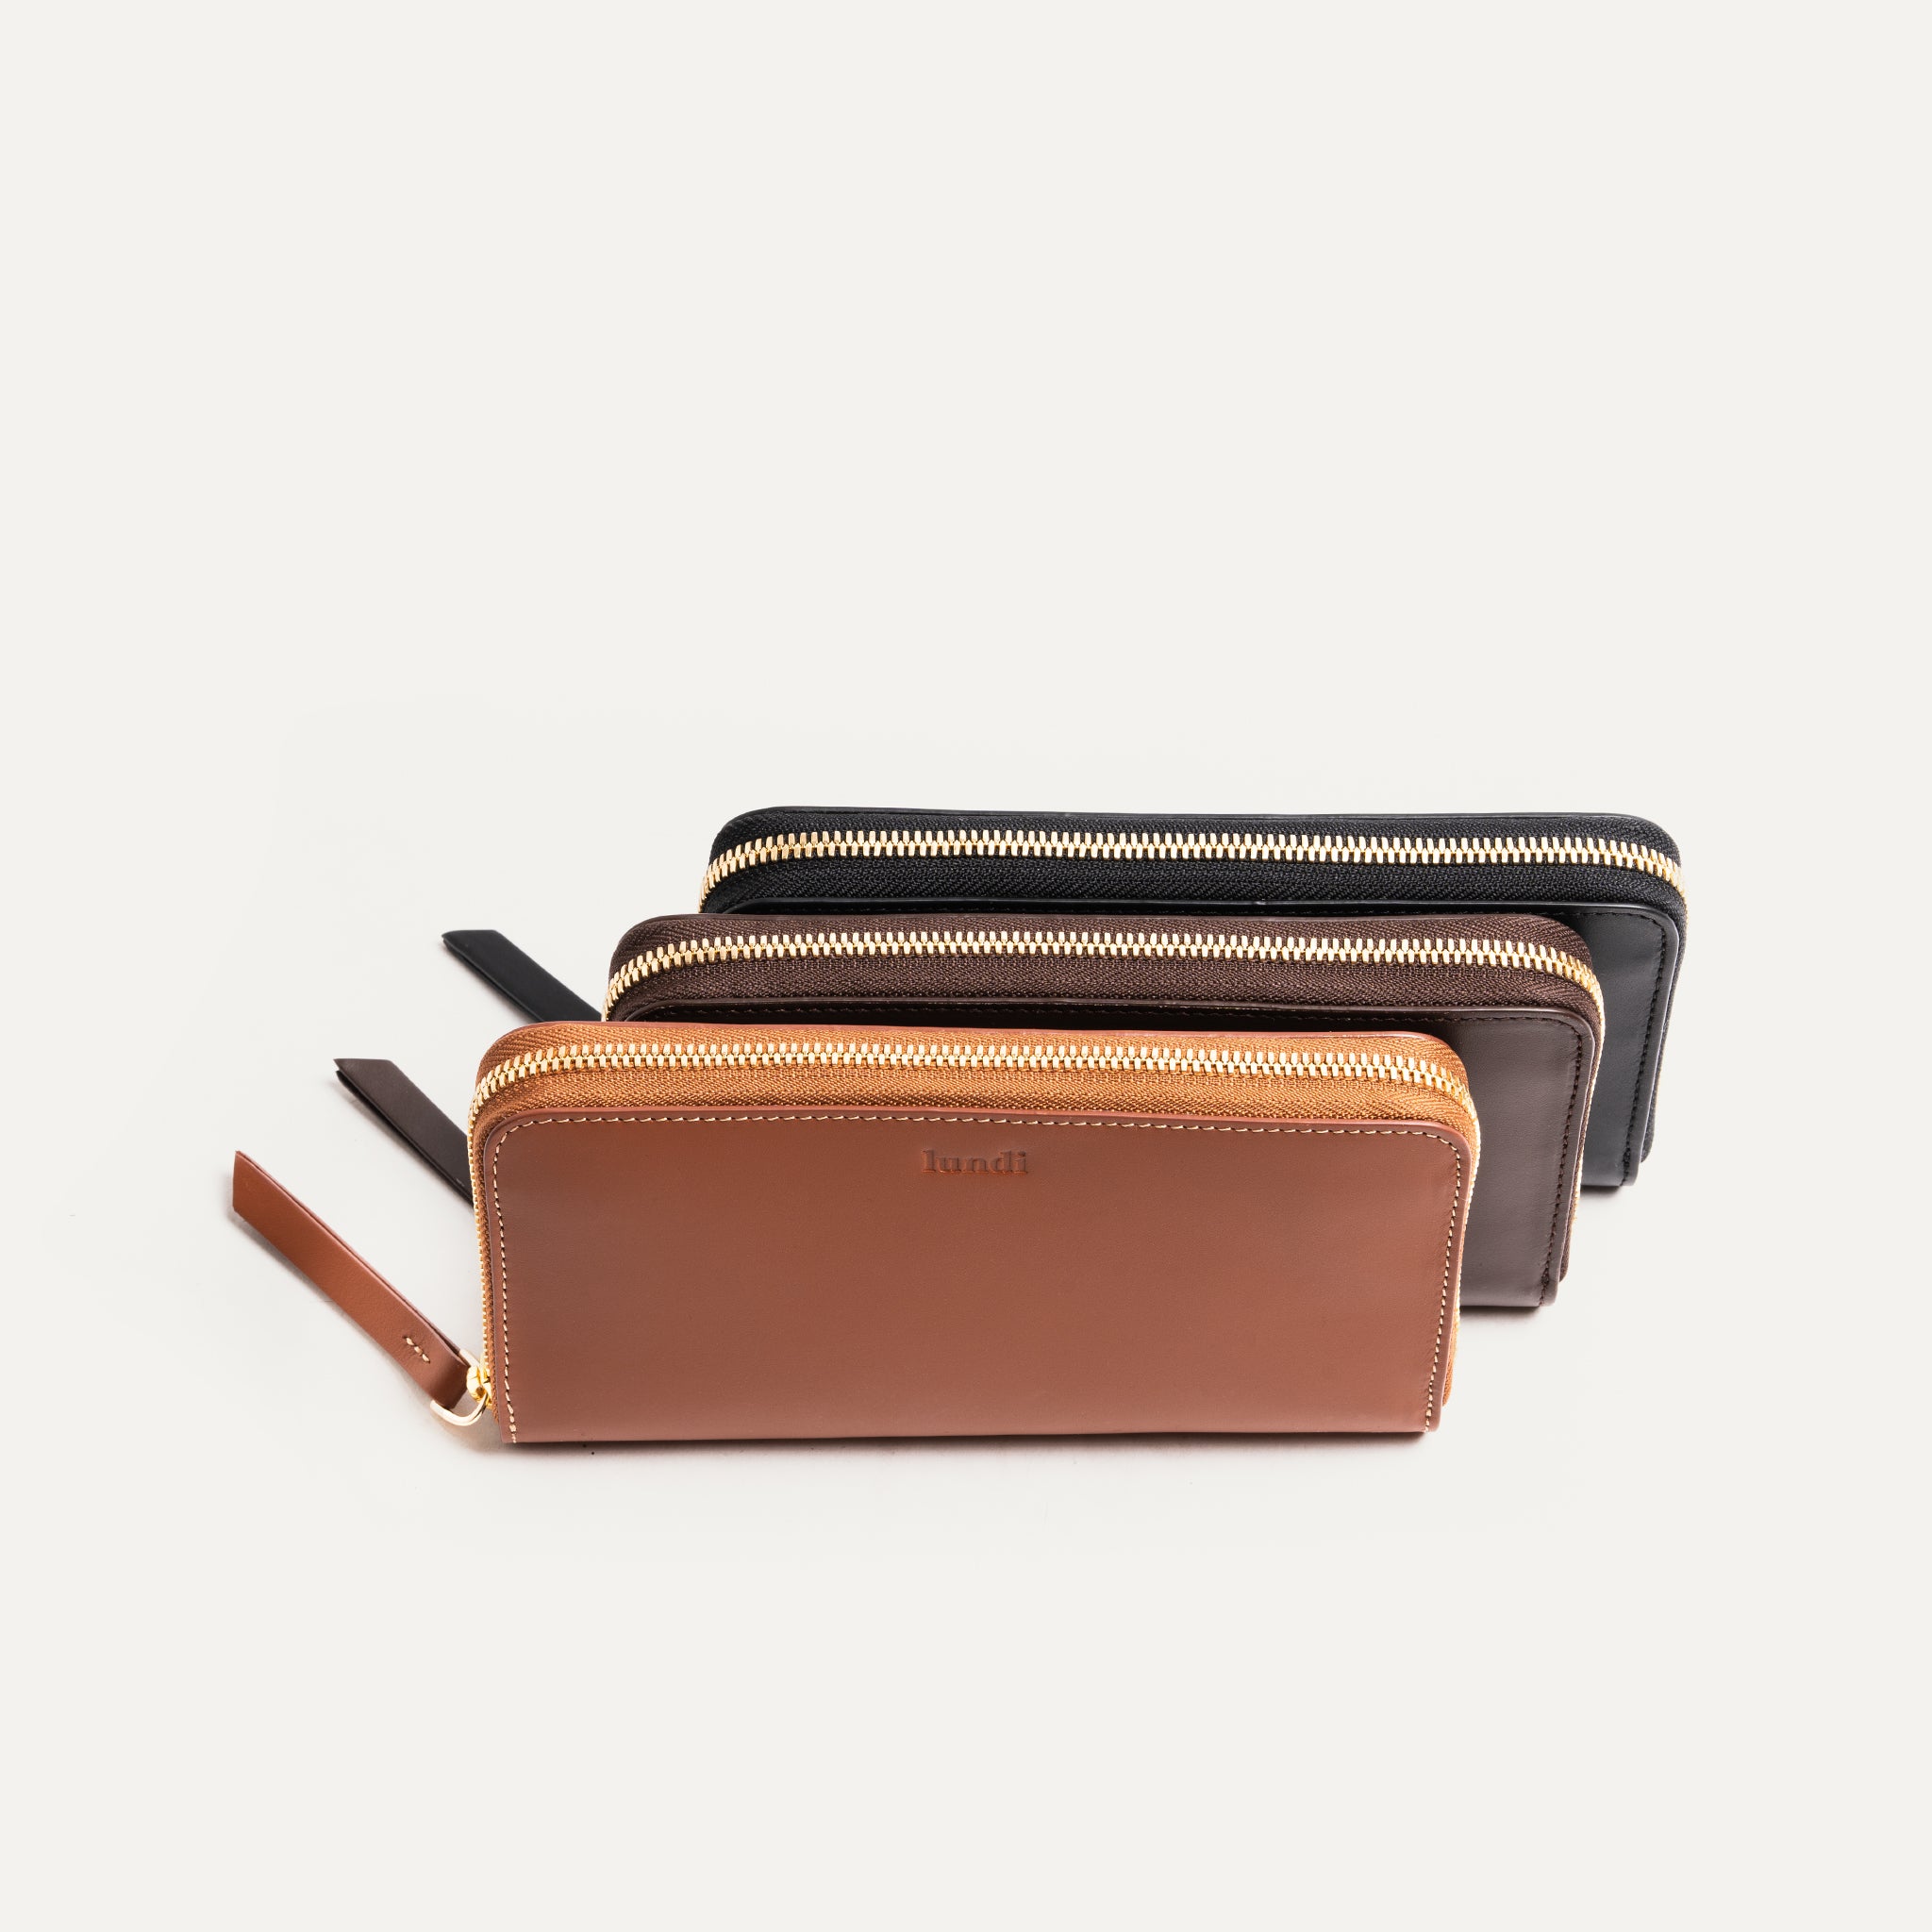 lundi Women Leather Wallet | Stella Cognac